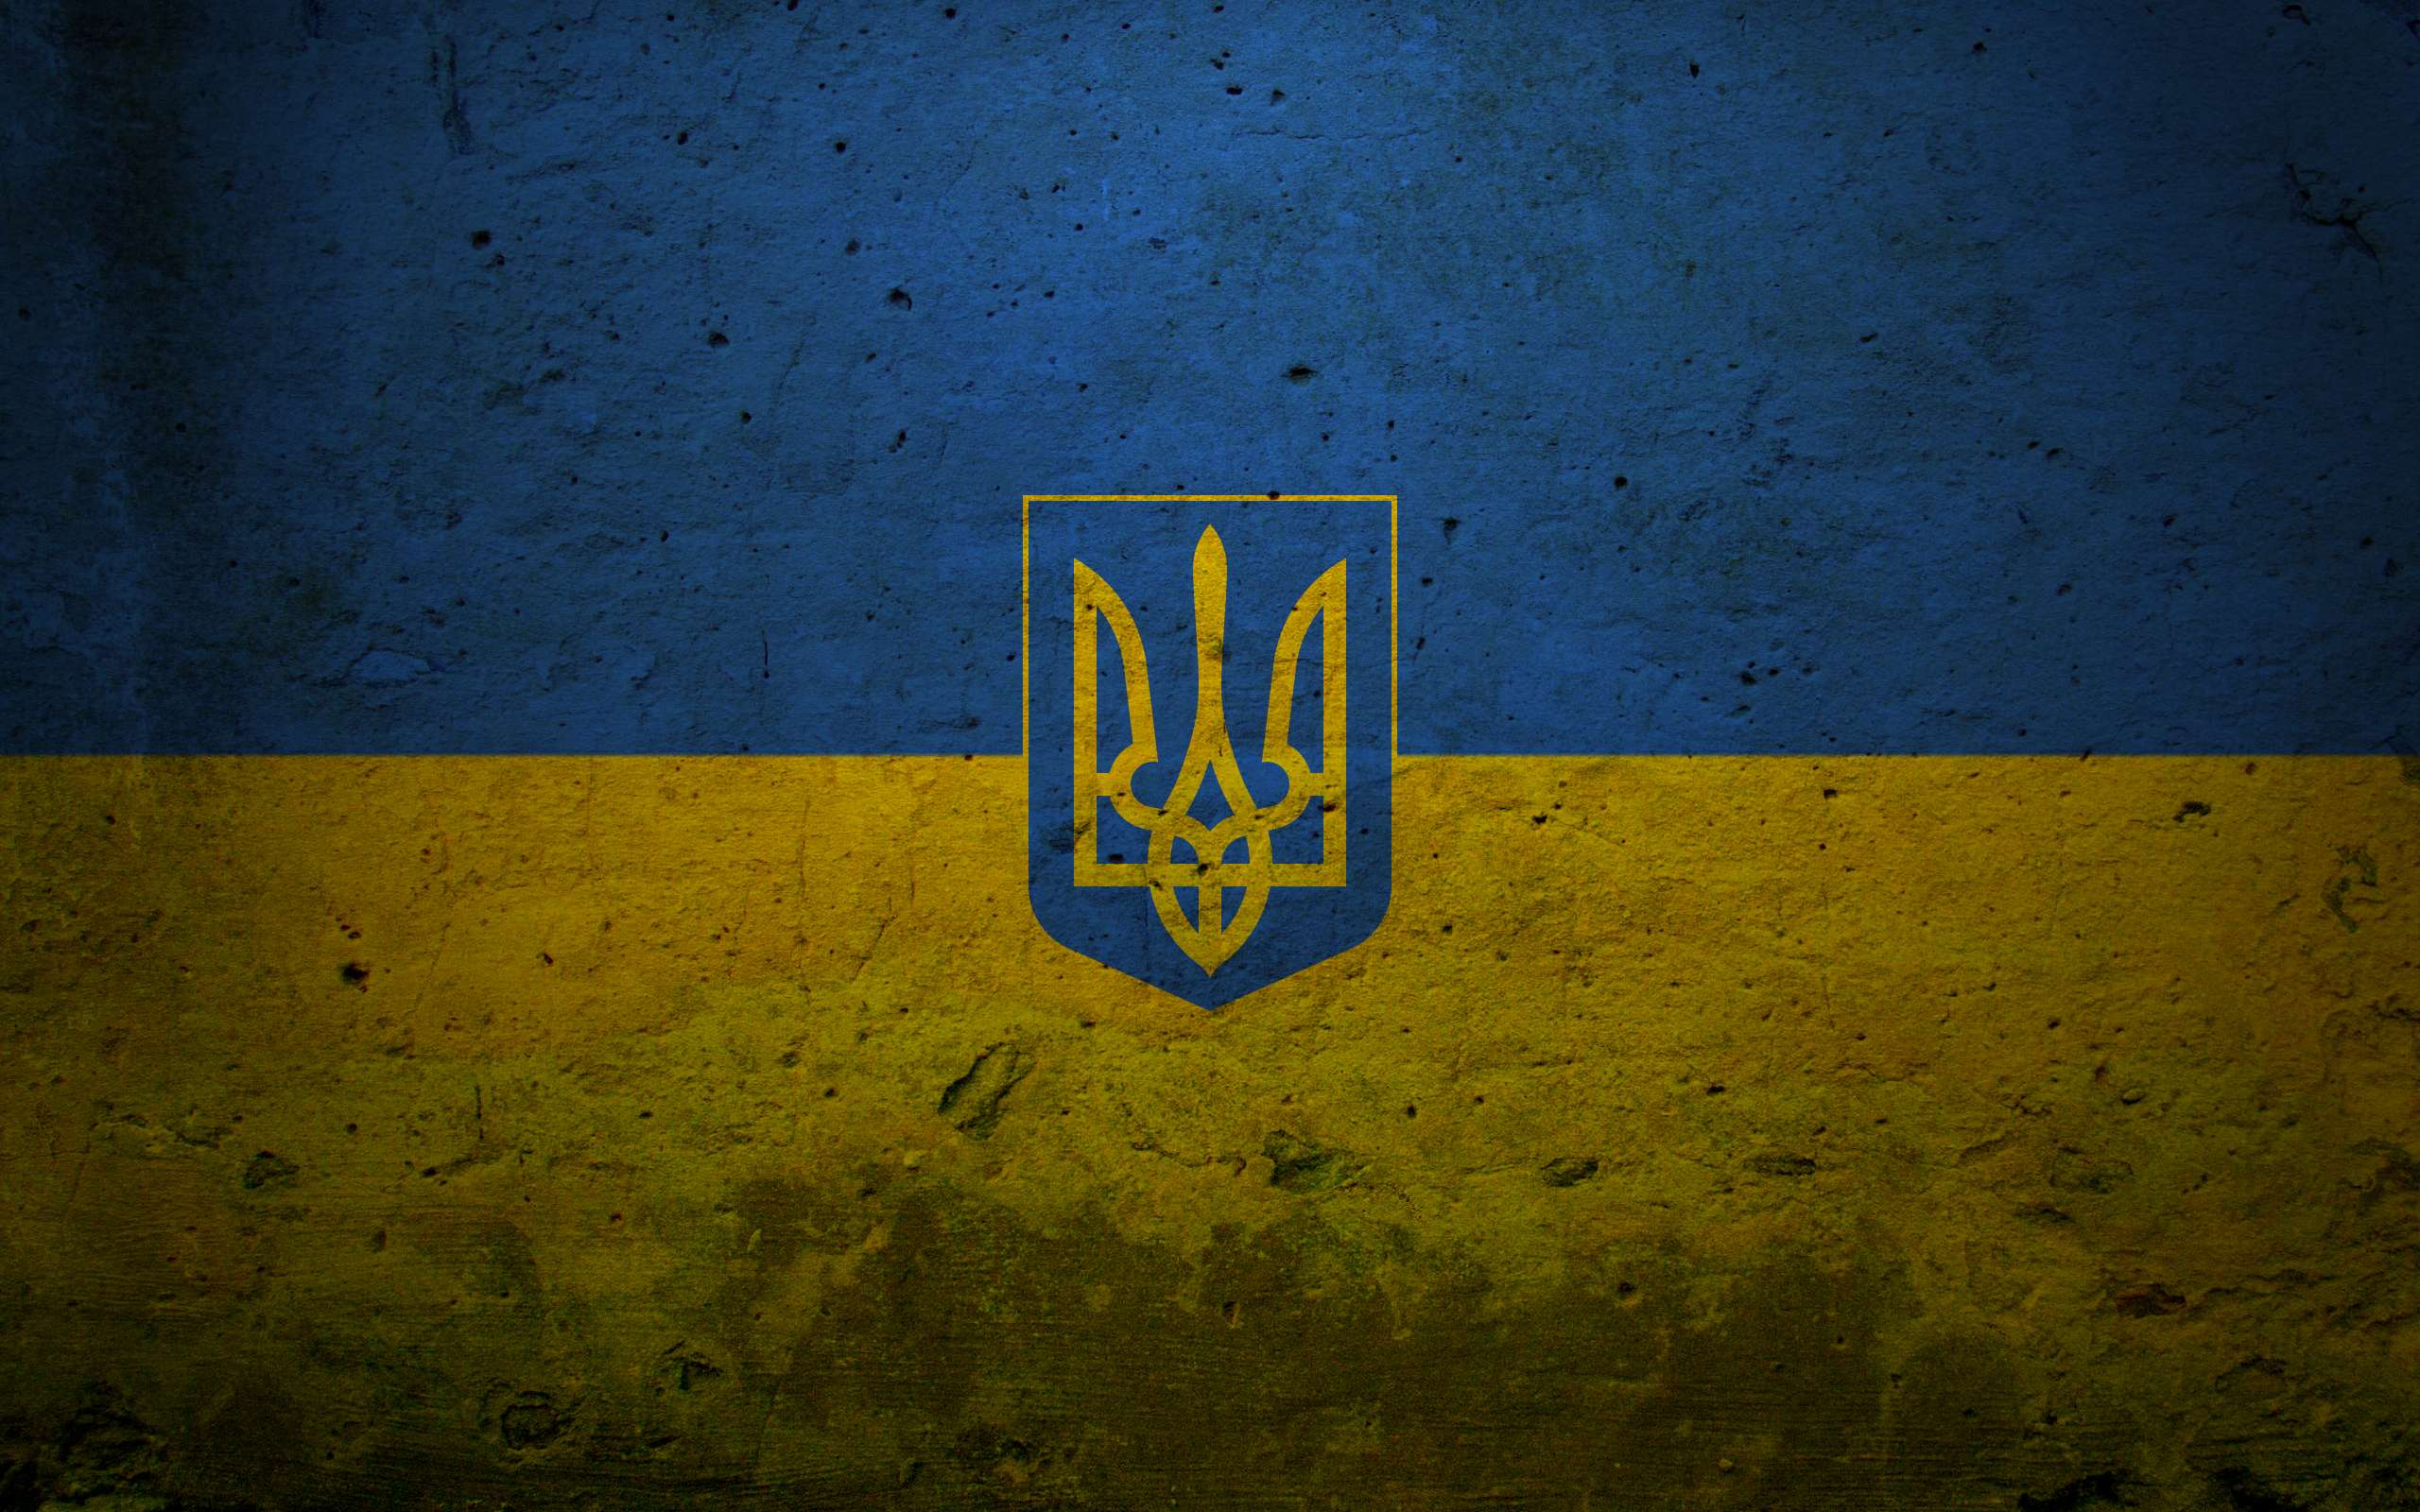 Meilleurs fonds d'écran Drapeau De L'ukraine pour l'écran du téléphone